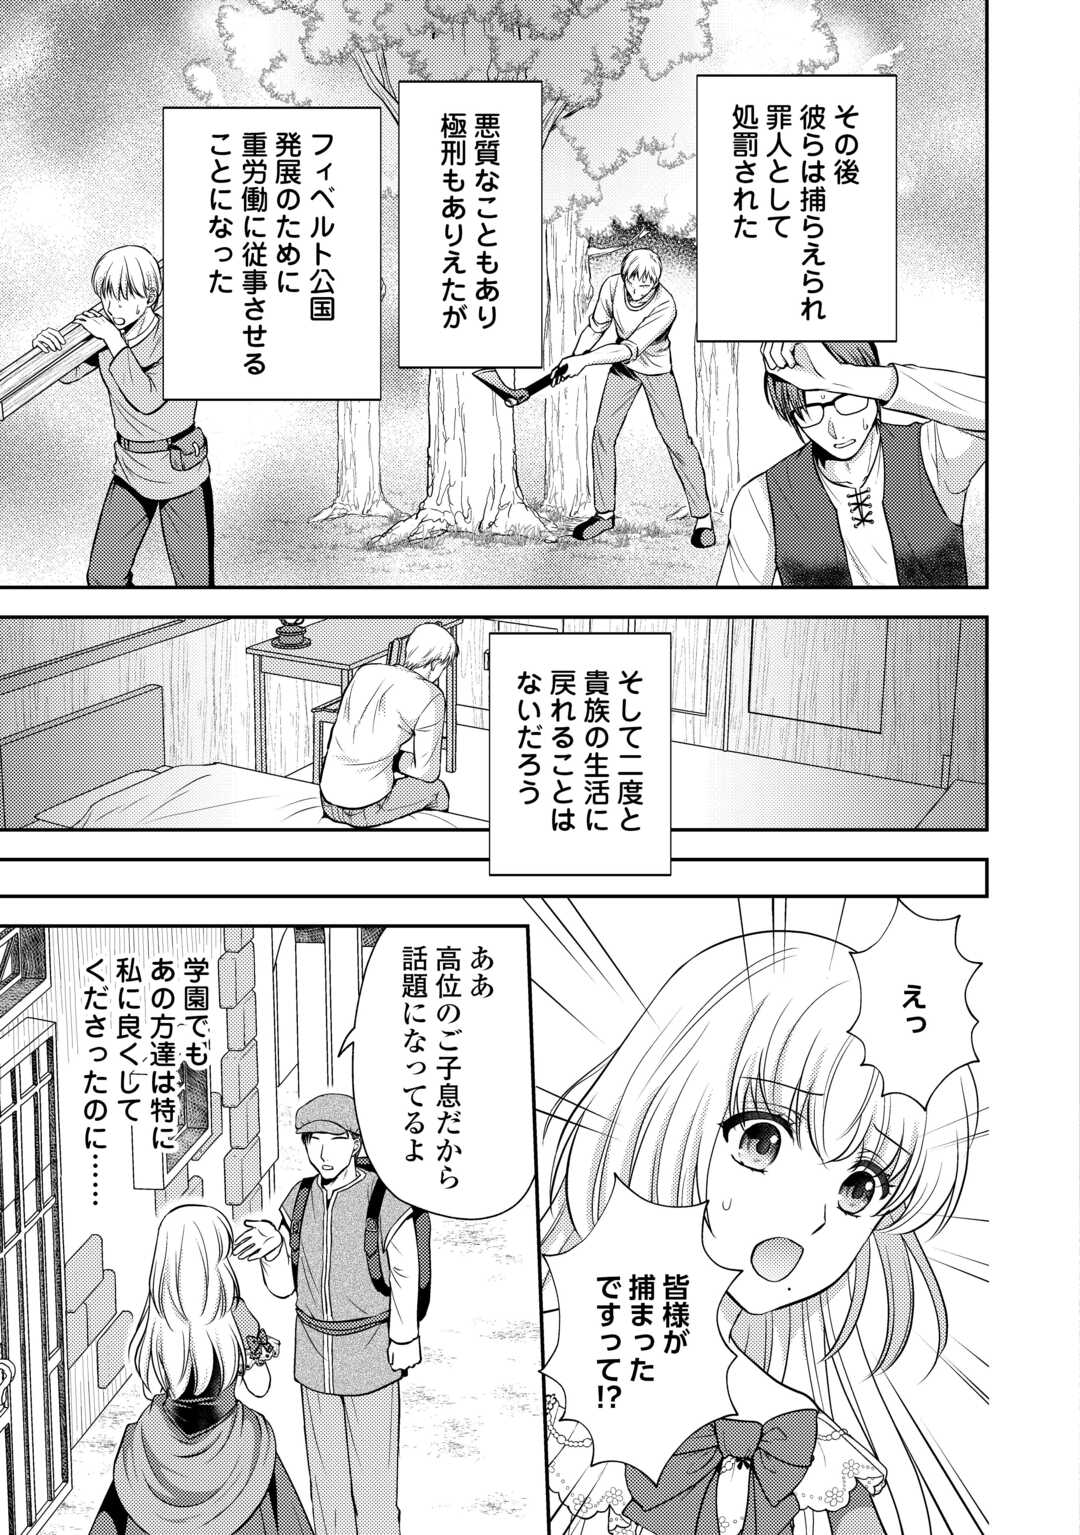 Kawaii Gimai ga Konyakuhaki Saretarashii no de, Ima kara Orei ni Mairimasu. - Chapter 12.2 - Page 16